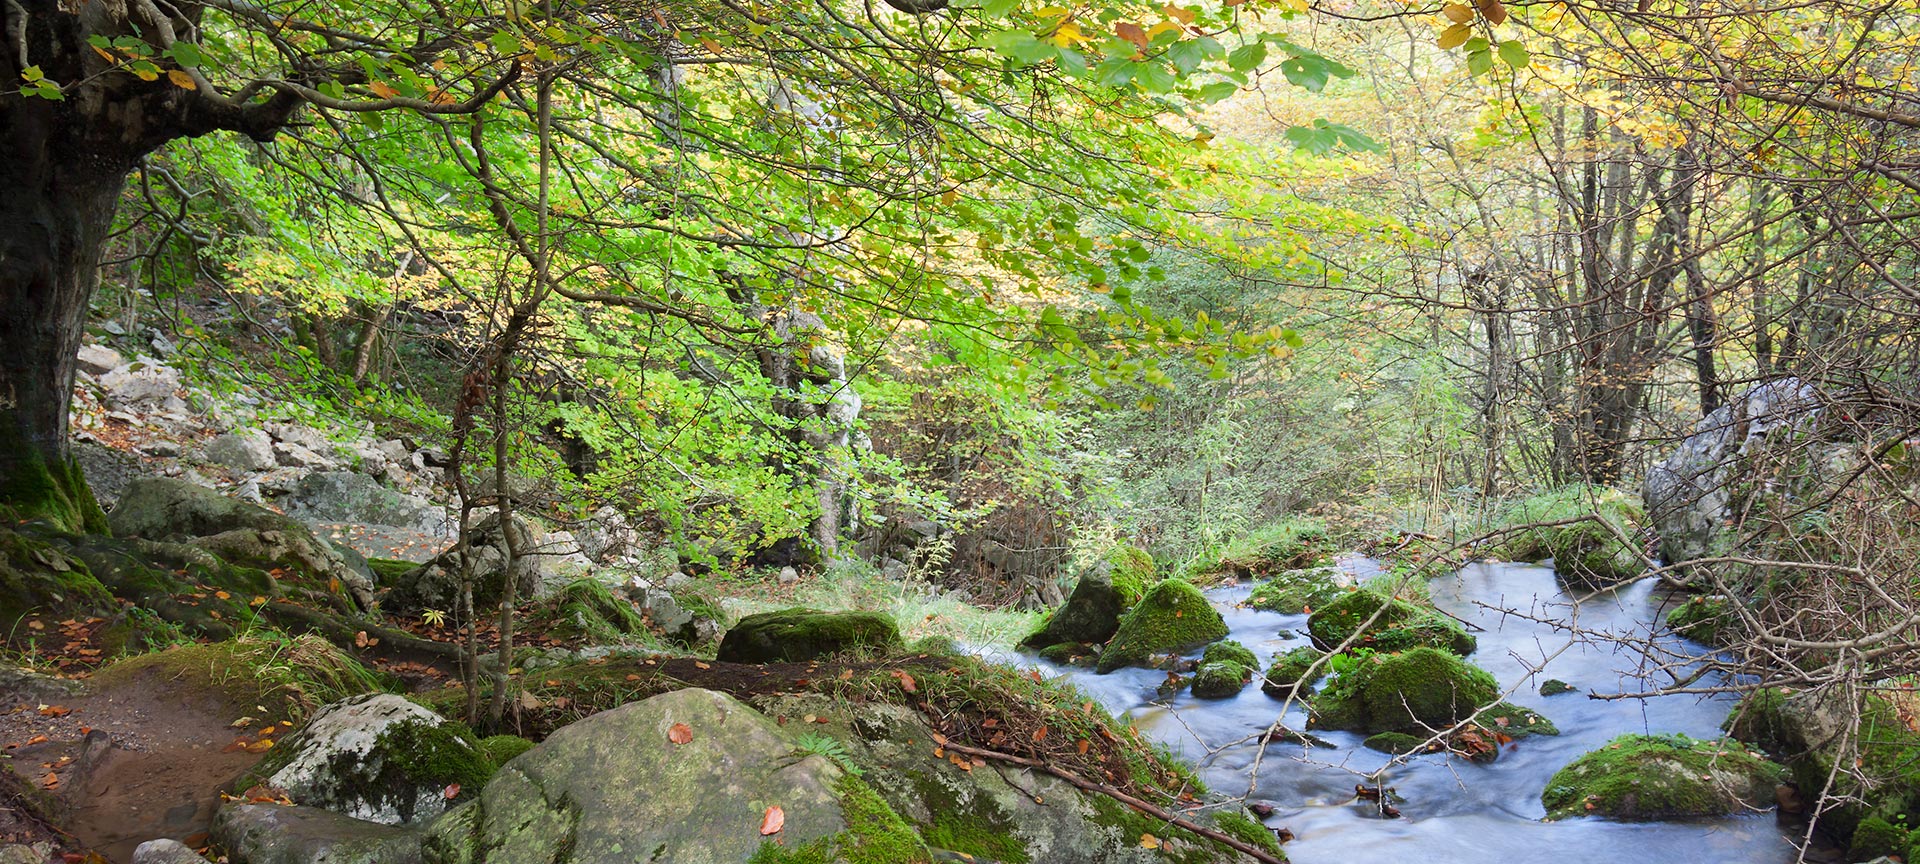 Bosbeek stroomt tussen herfstbomen en mossige rotsen.